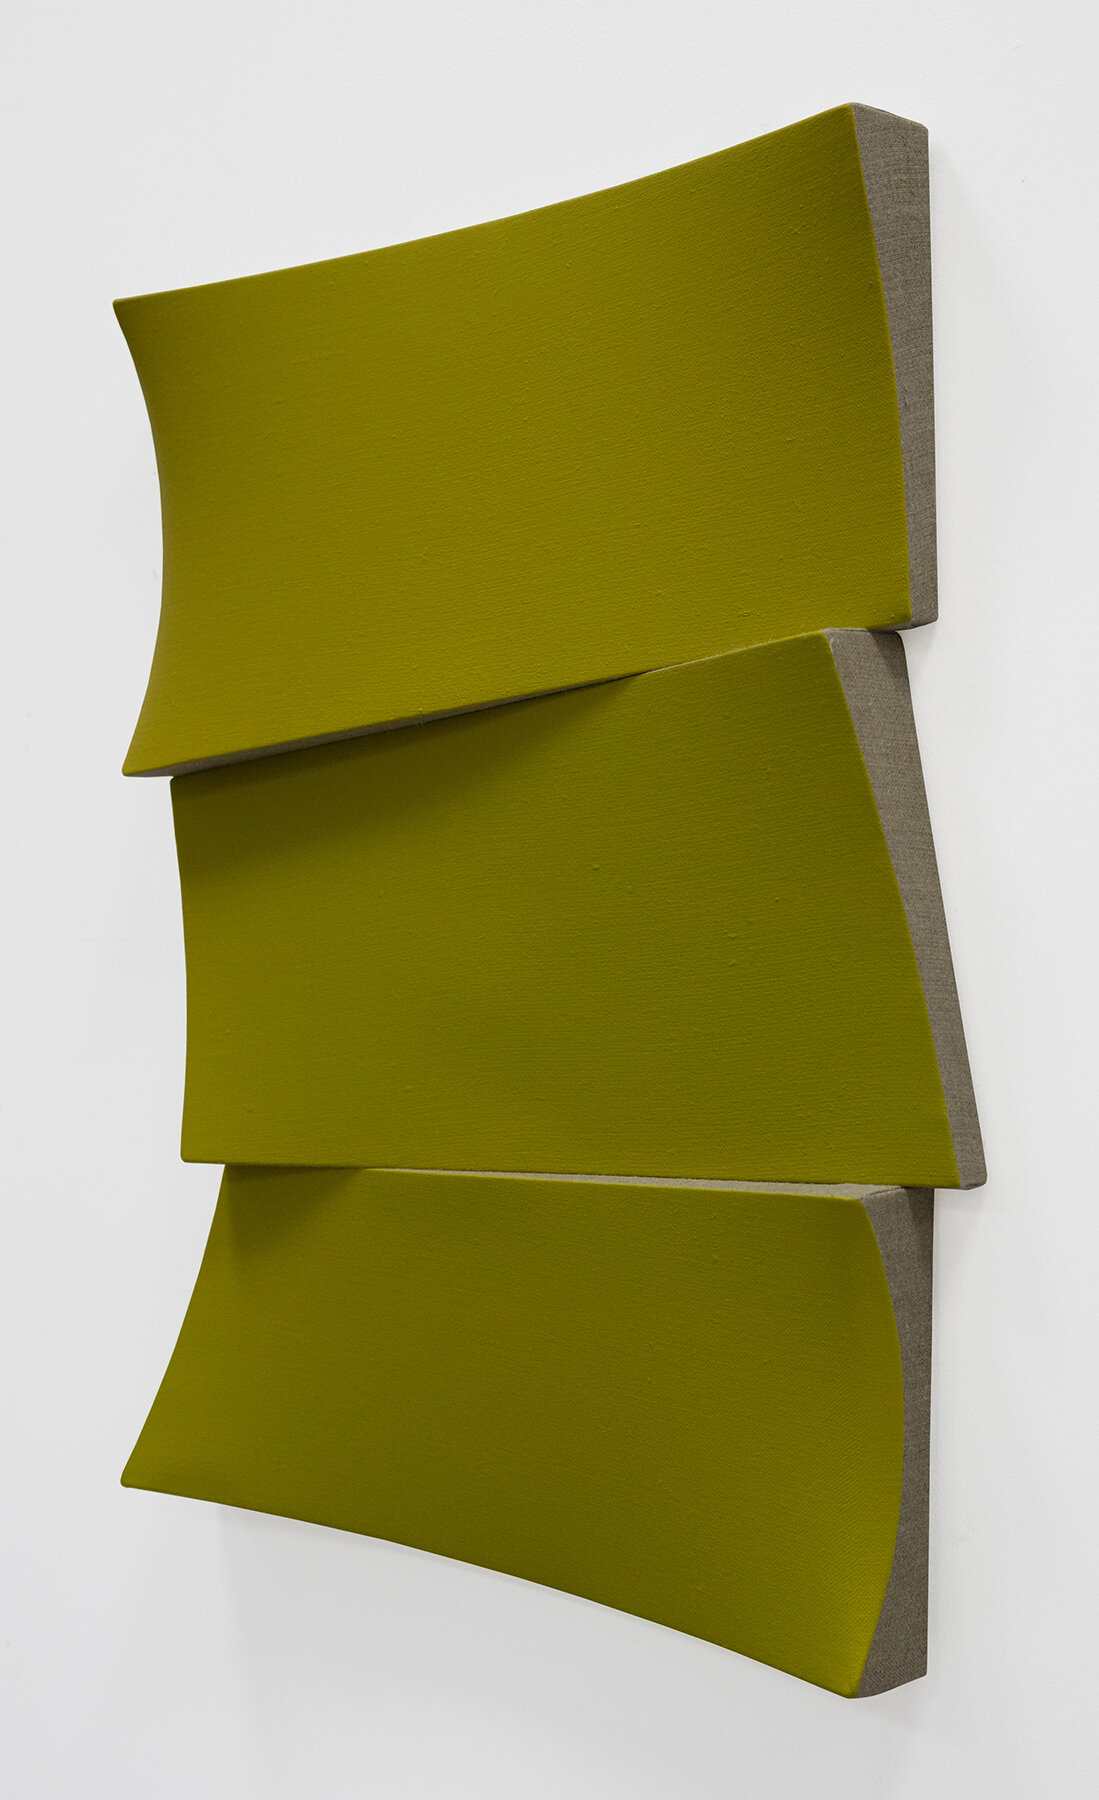 JAN MAARTEN VOSKUIL | Broken yellow stack (side view), 25.5 x 21 x 2 inches / 65 x 53 x 5 cm, acrylics on linen, 2019